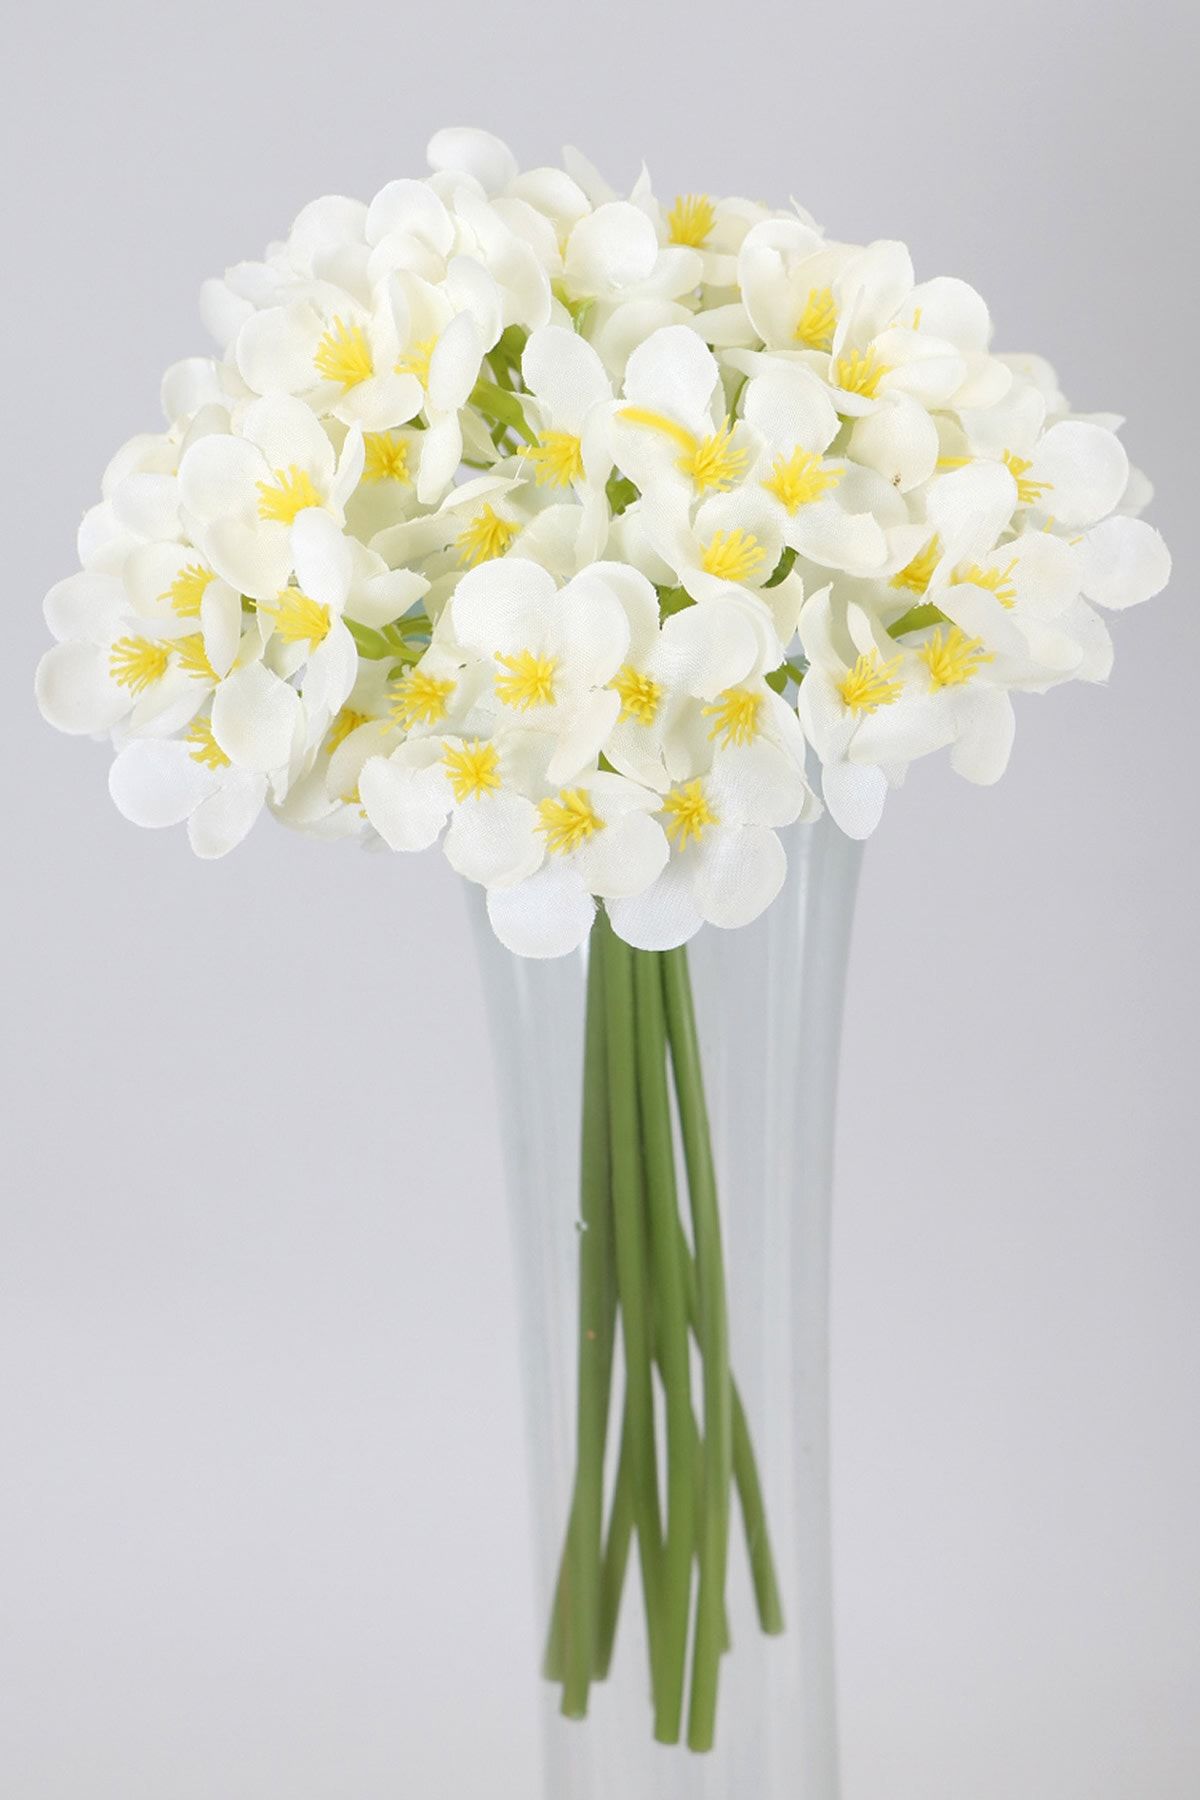 Yapay Çiçek Deposu Kaliteli Yapay Mine Çiçekli Buket 26 Cm Beyaz